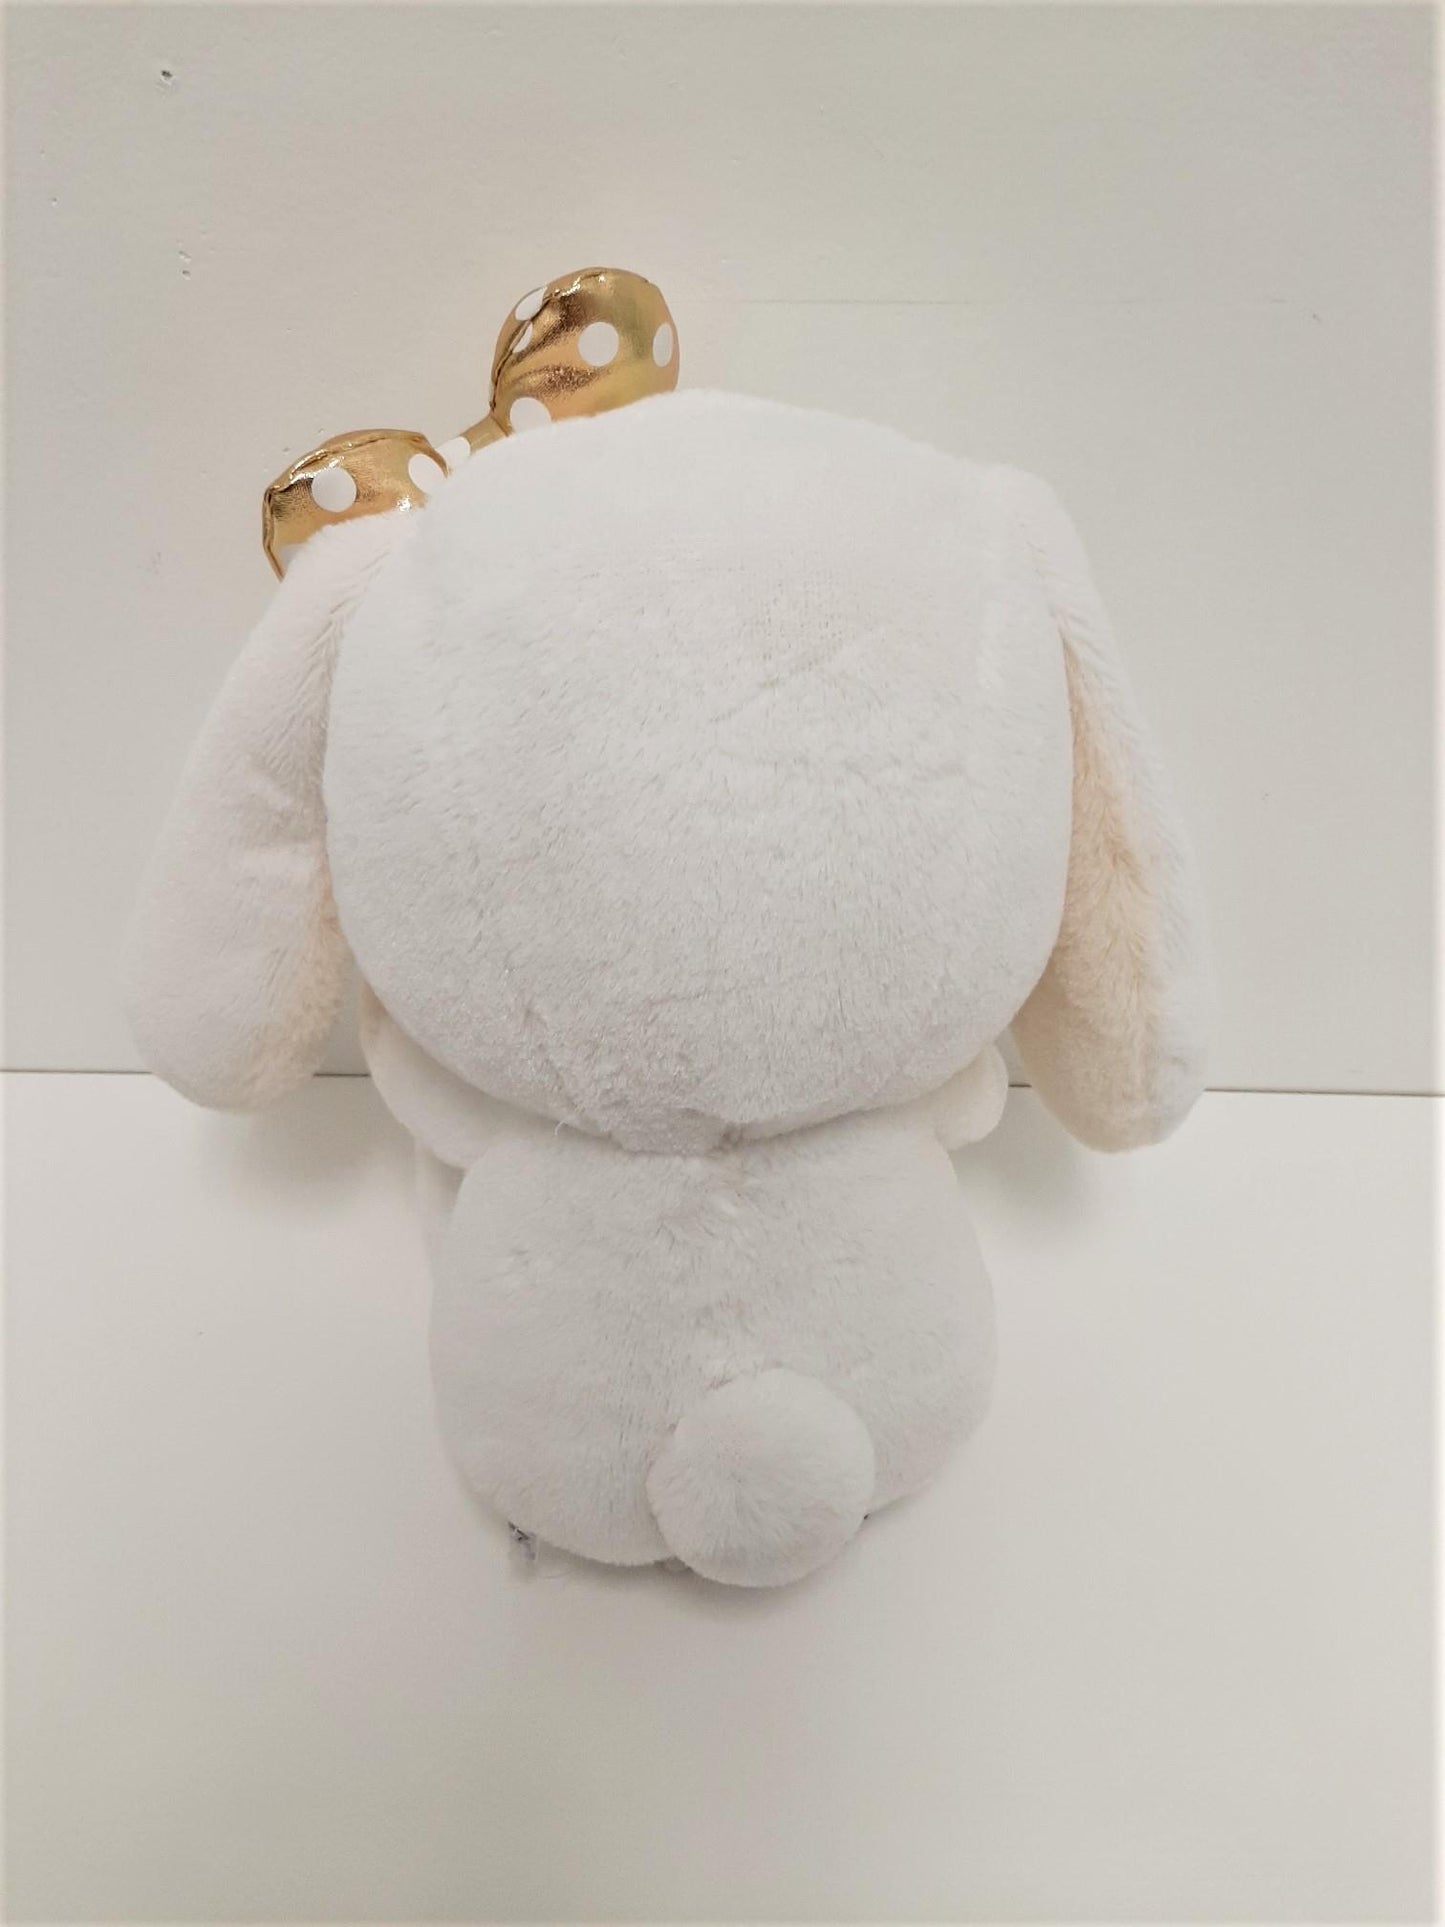 Amuse: White Bunny Gold Polka-Dot Bow 10" Plush